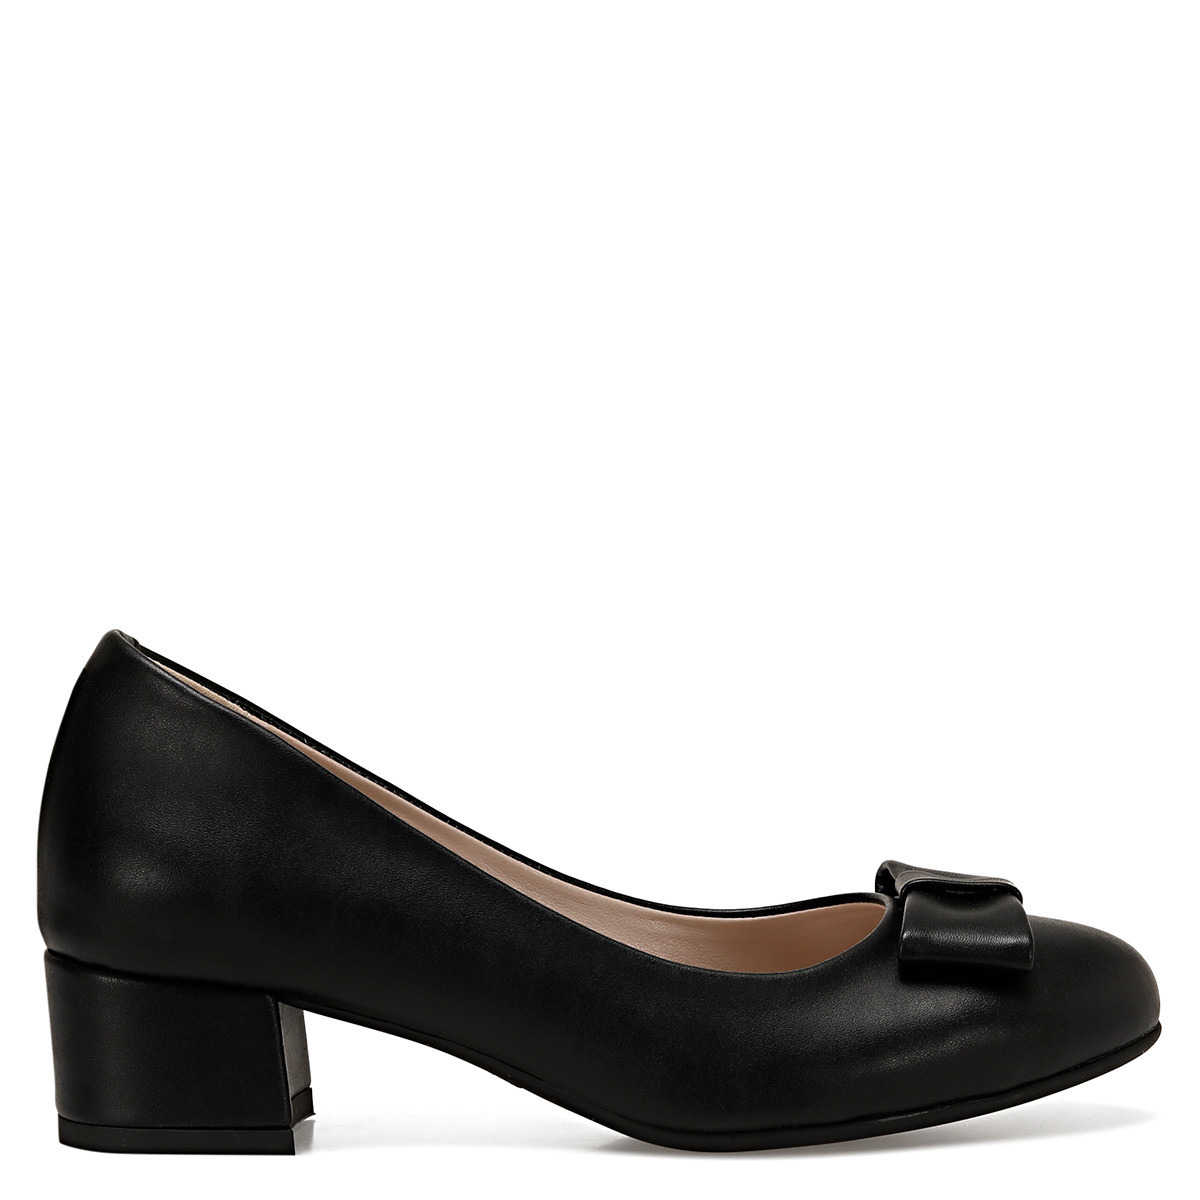 Flo LENIO Siyah Kadın Klasik Topuklu Ayakkabı. 3